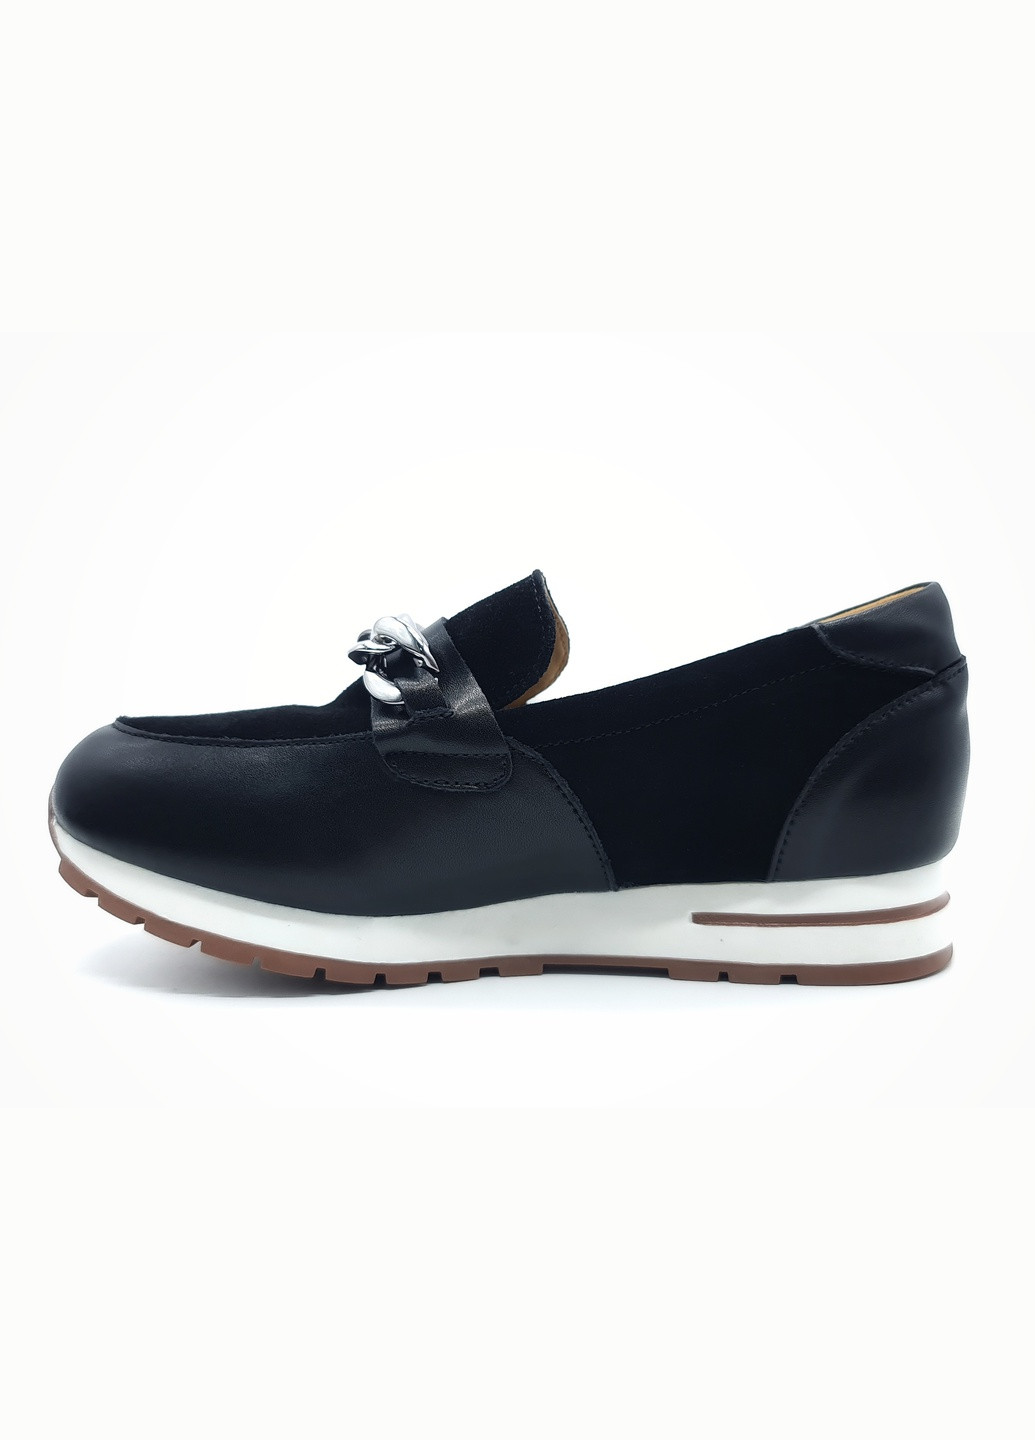 Женские туфли черные замшевые L-17-1 23,5 см (р) Lonza